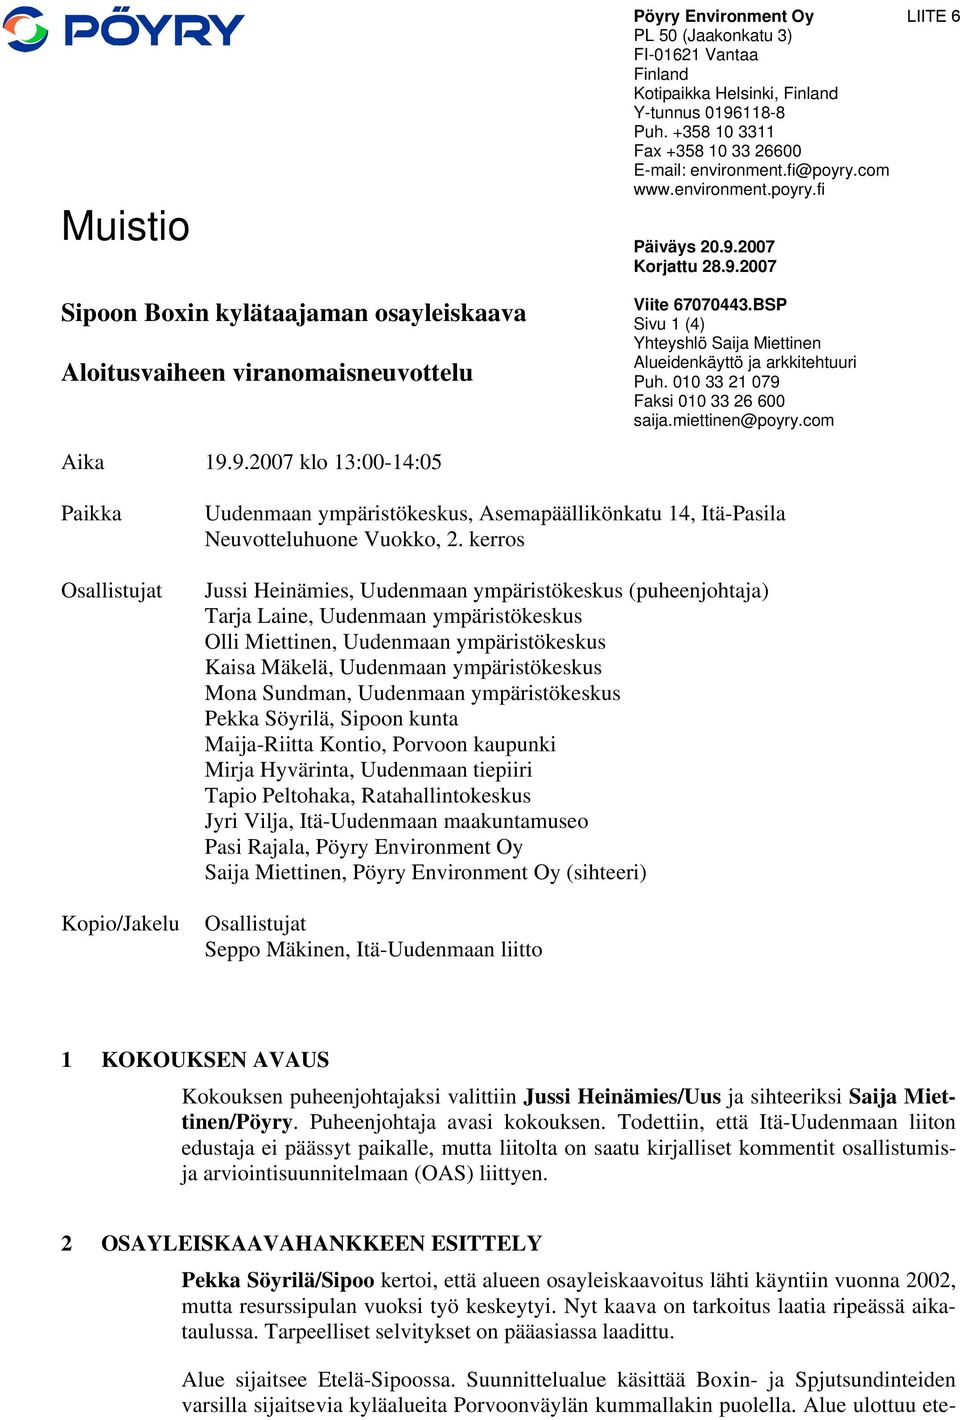 BSP Sivu 1 (4) Yhteyshlö Saija Miettinen Alueidenkäyttö ja arkkitehtuuri Puh. 010 33 21 079 